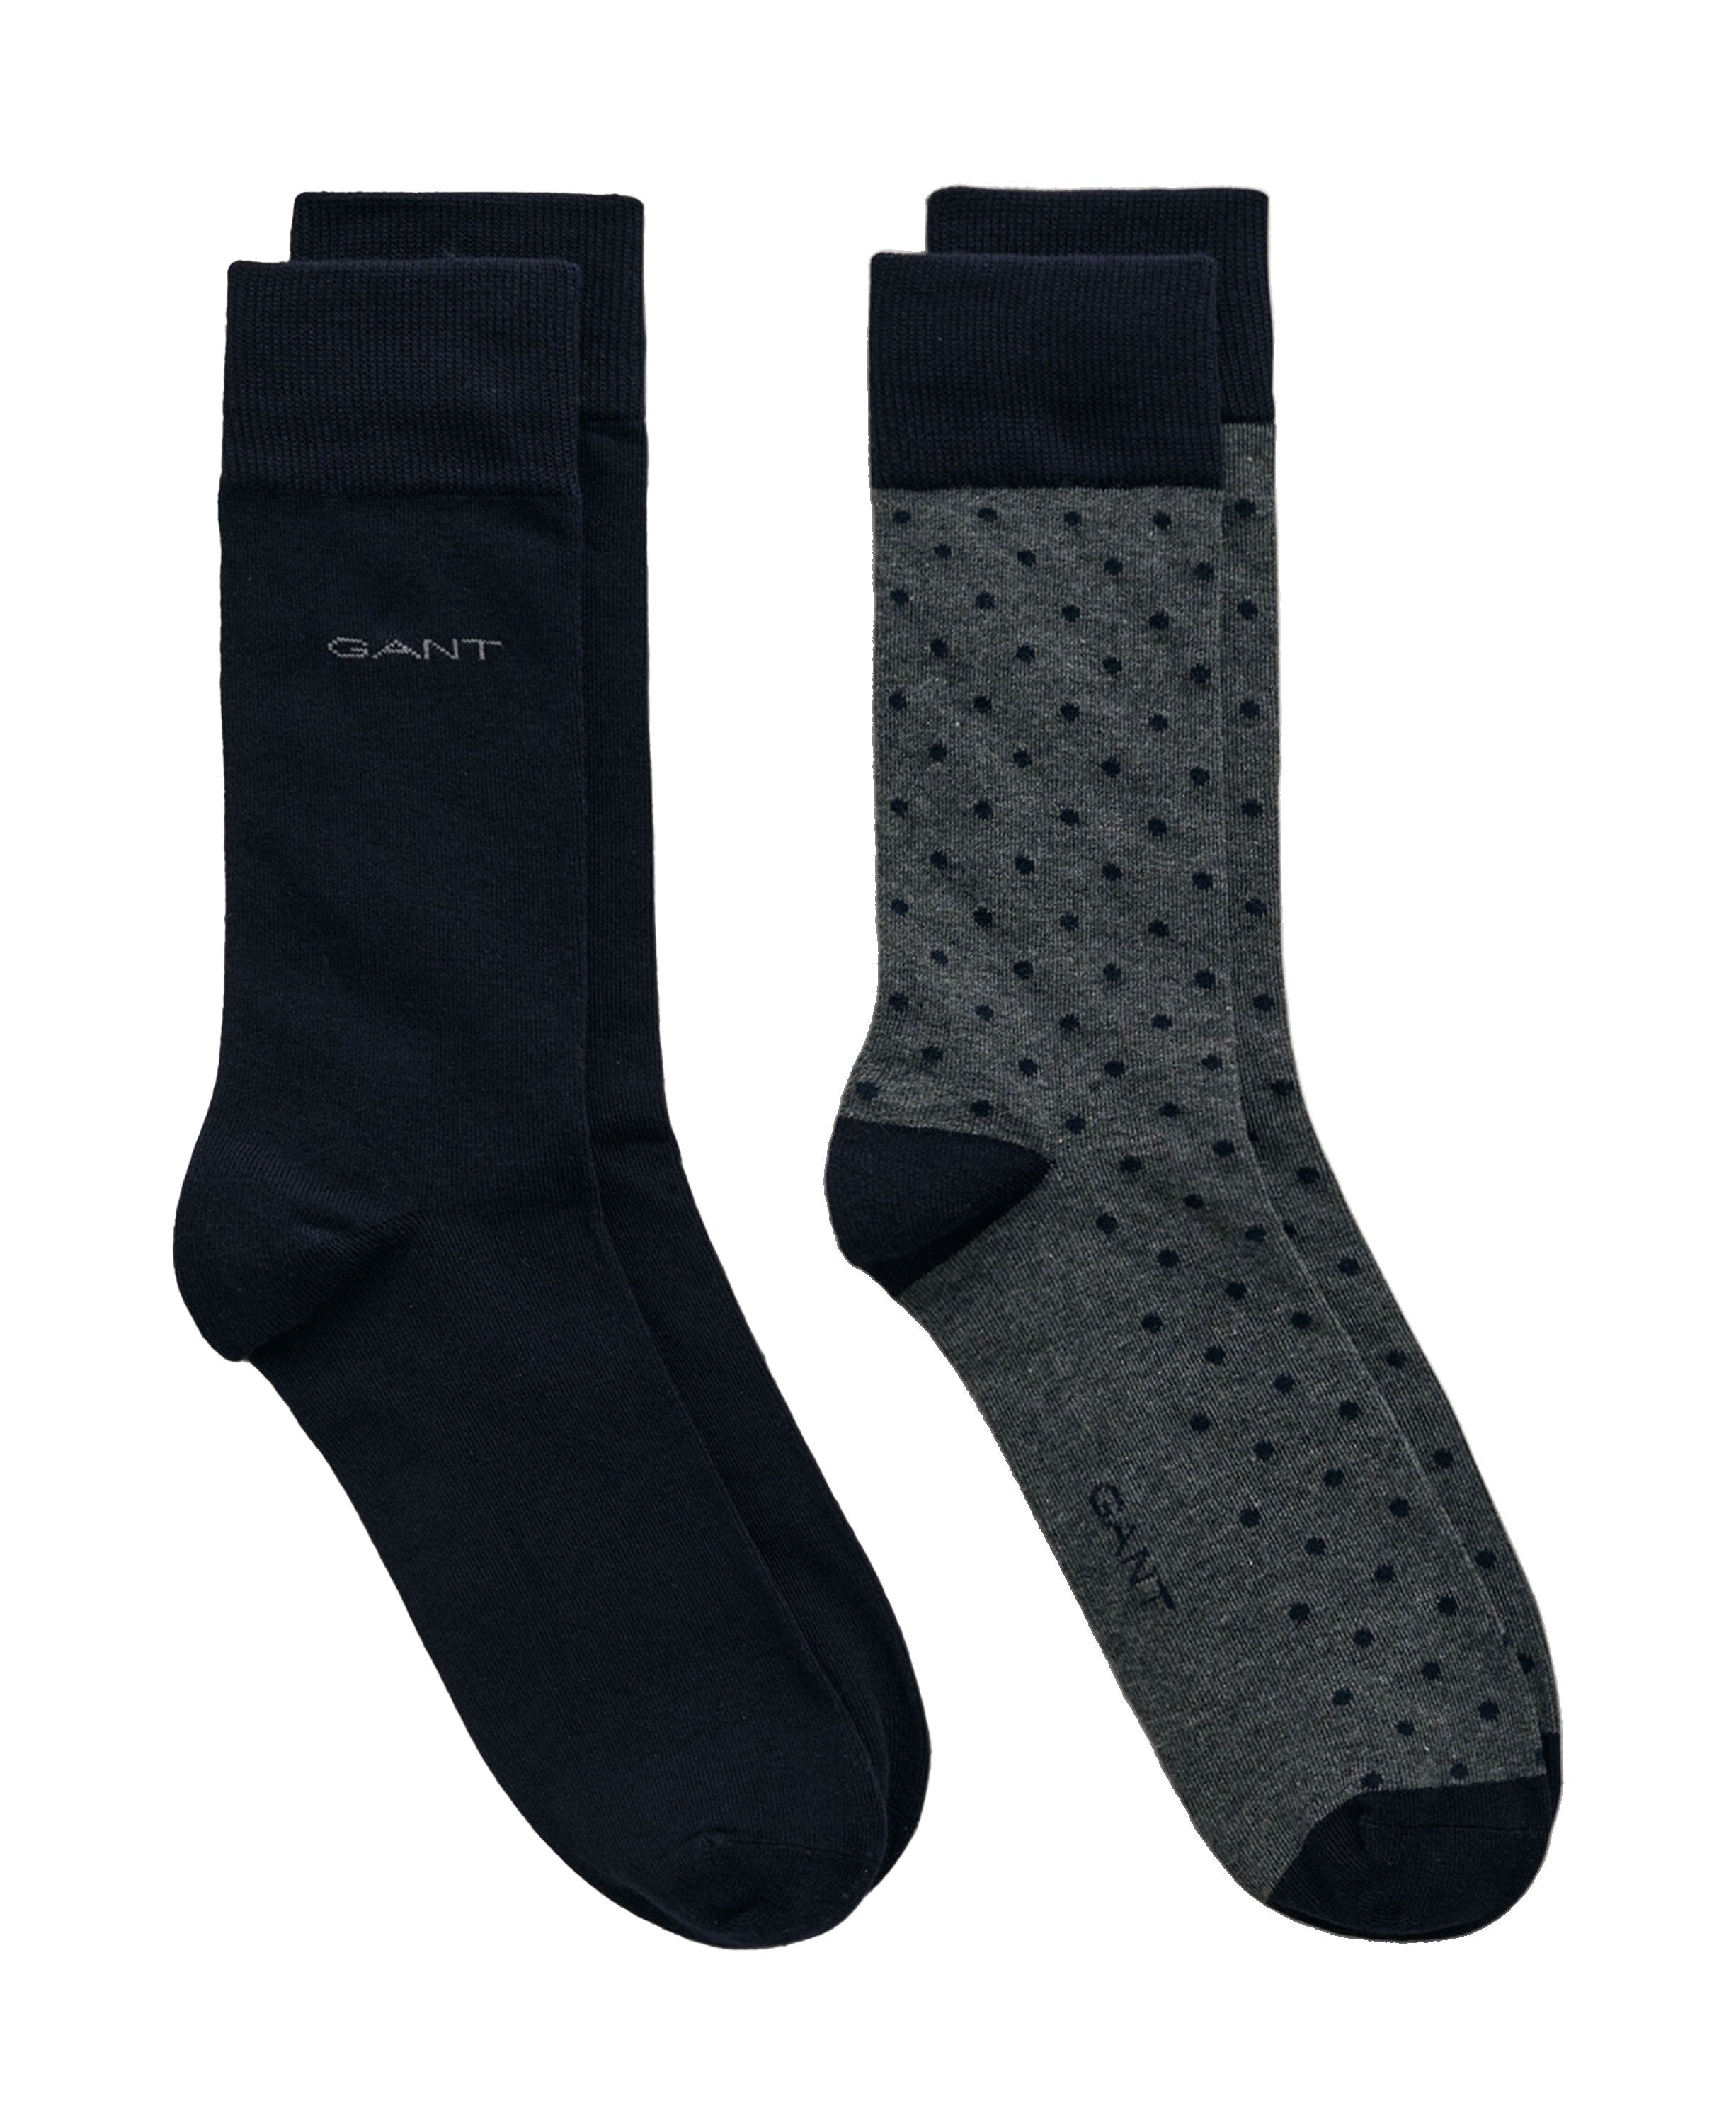 Dot And Solid Socks 2-Pack - Charcoal Melange